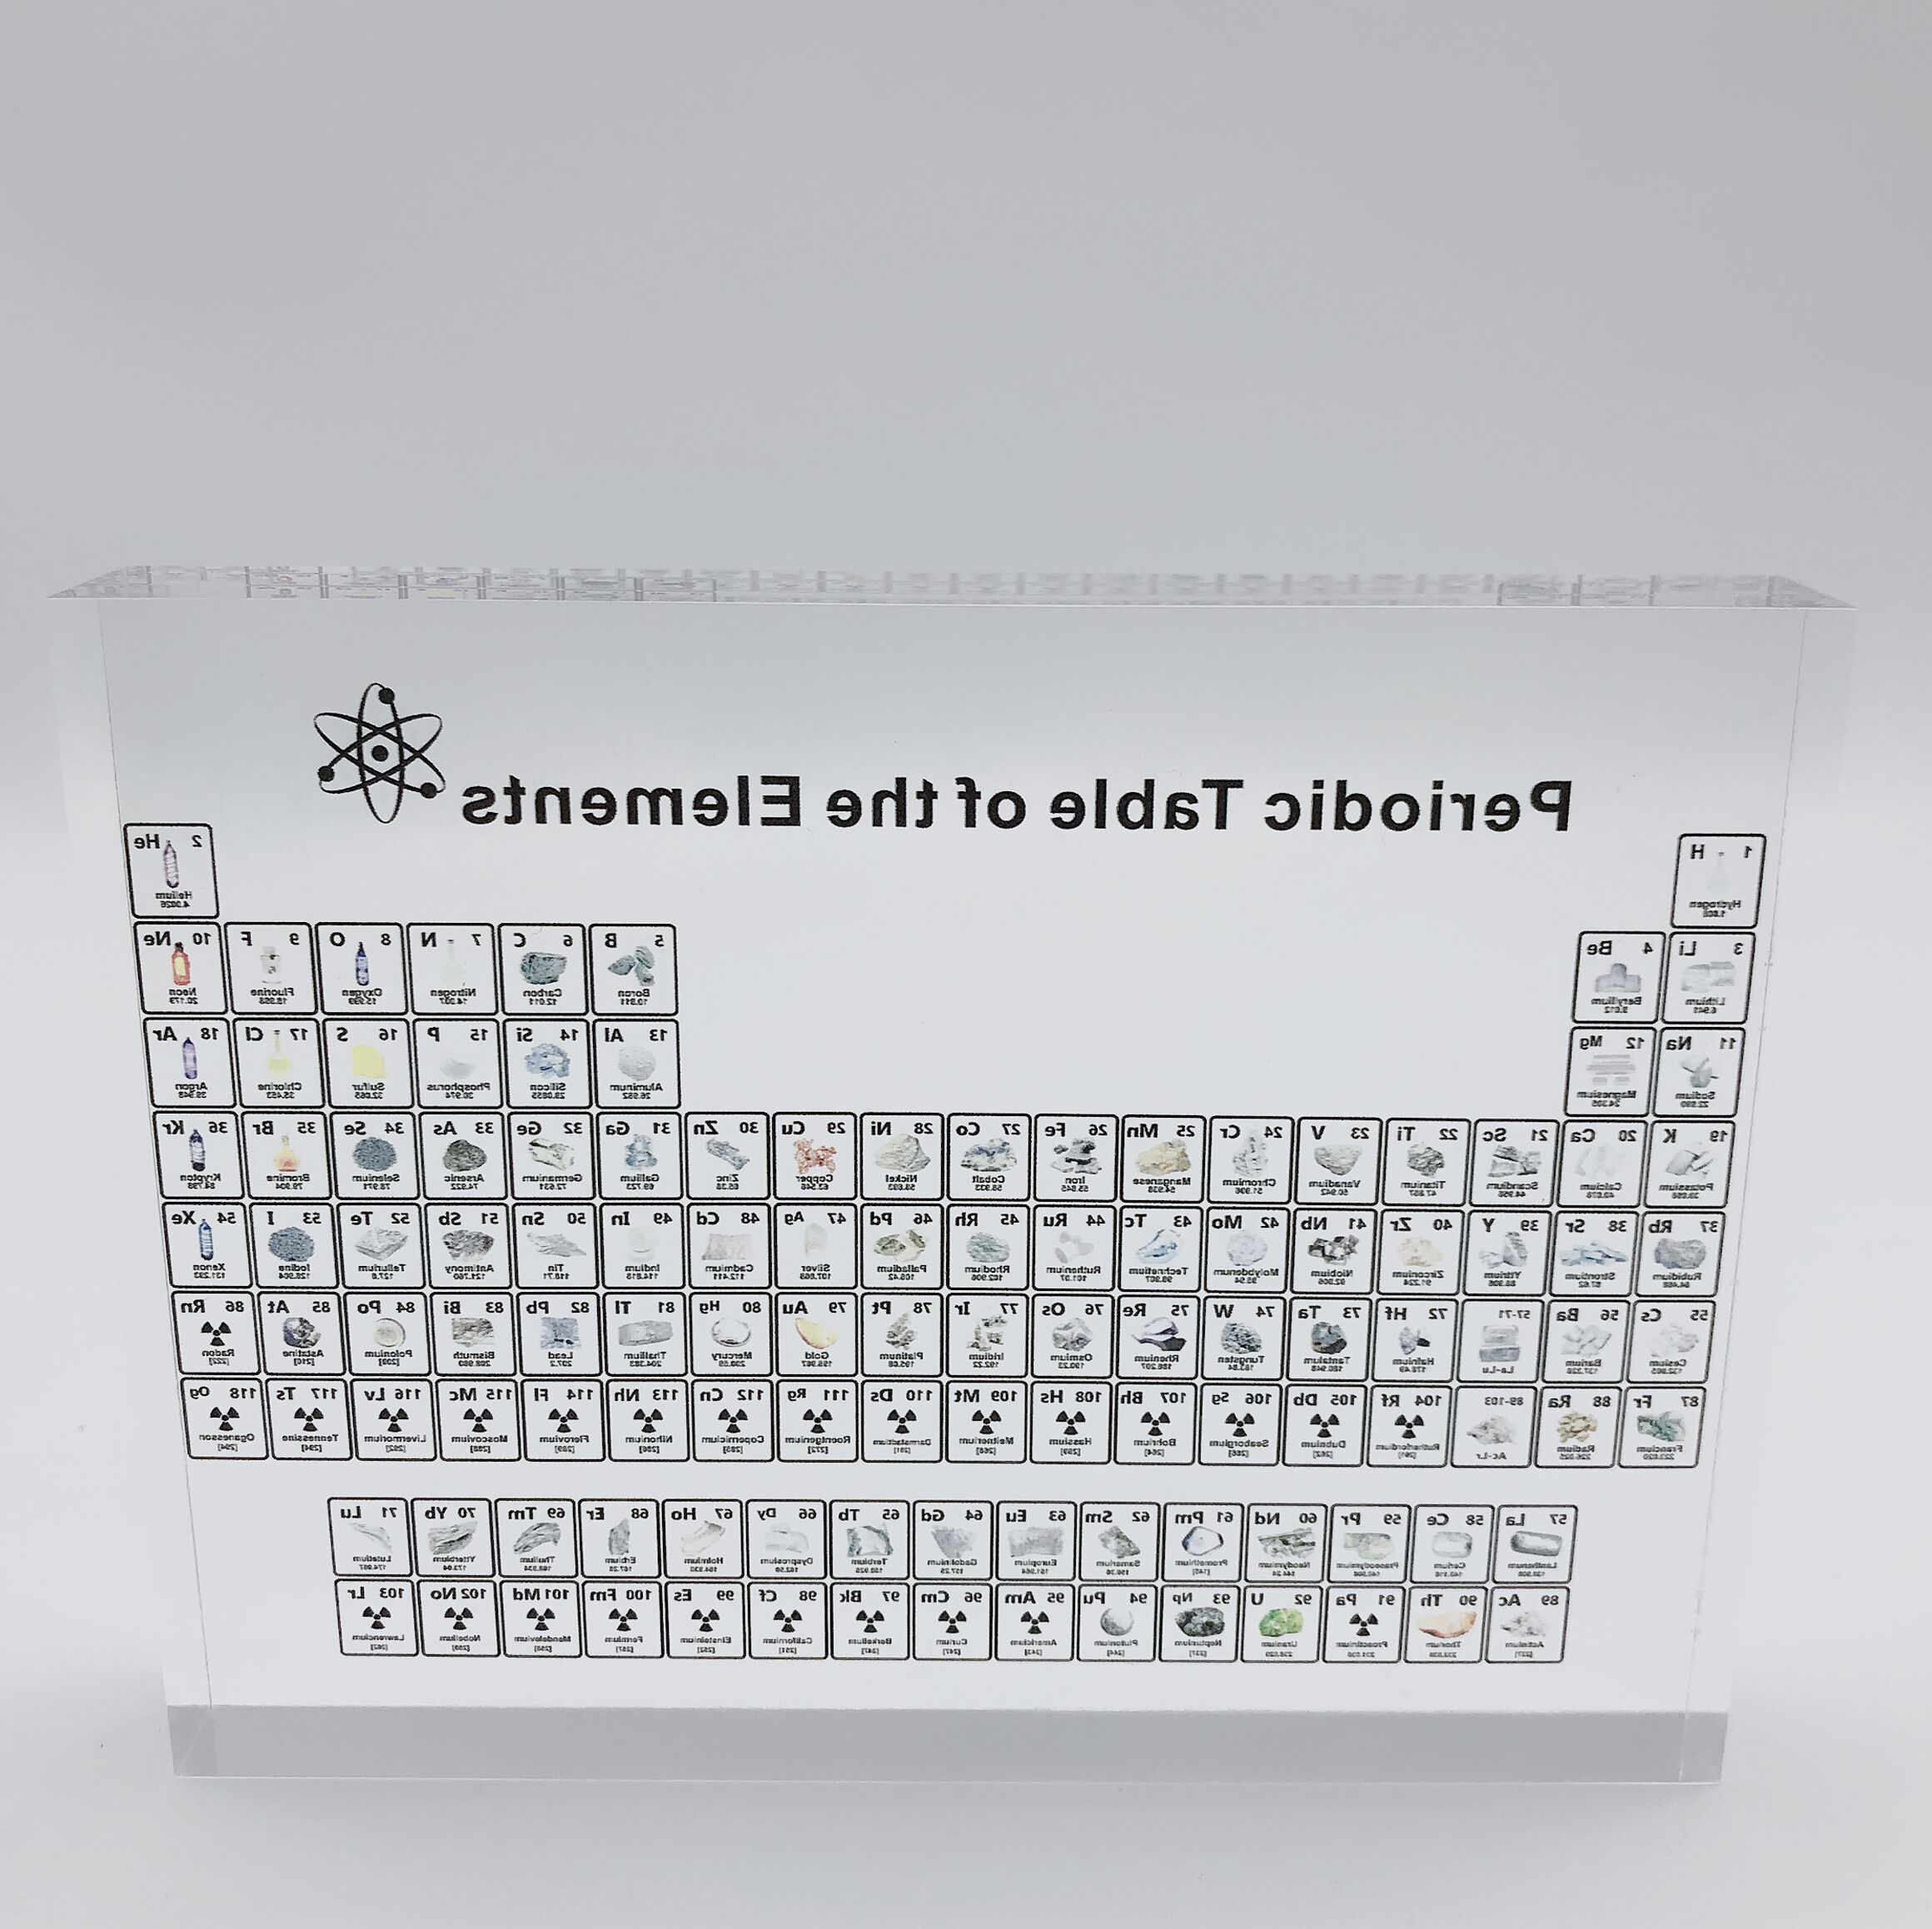 Uden elementer akryl periodisk tabel display børn undervisningsværktøj fødselsdag kemisk element ramme dekoration håndværk